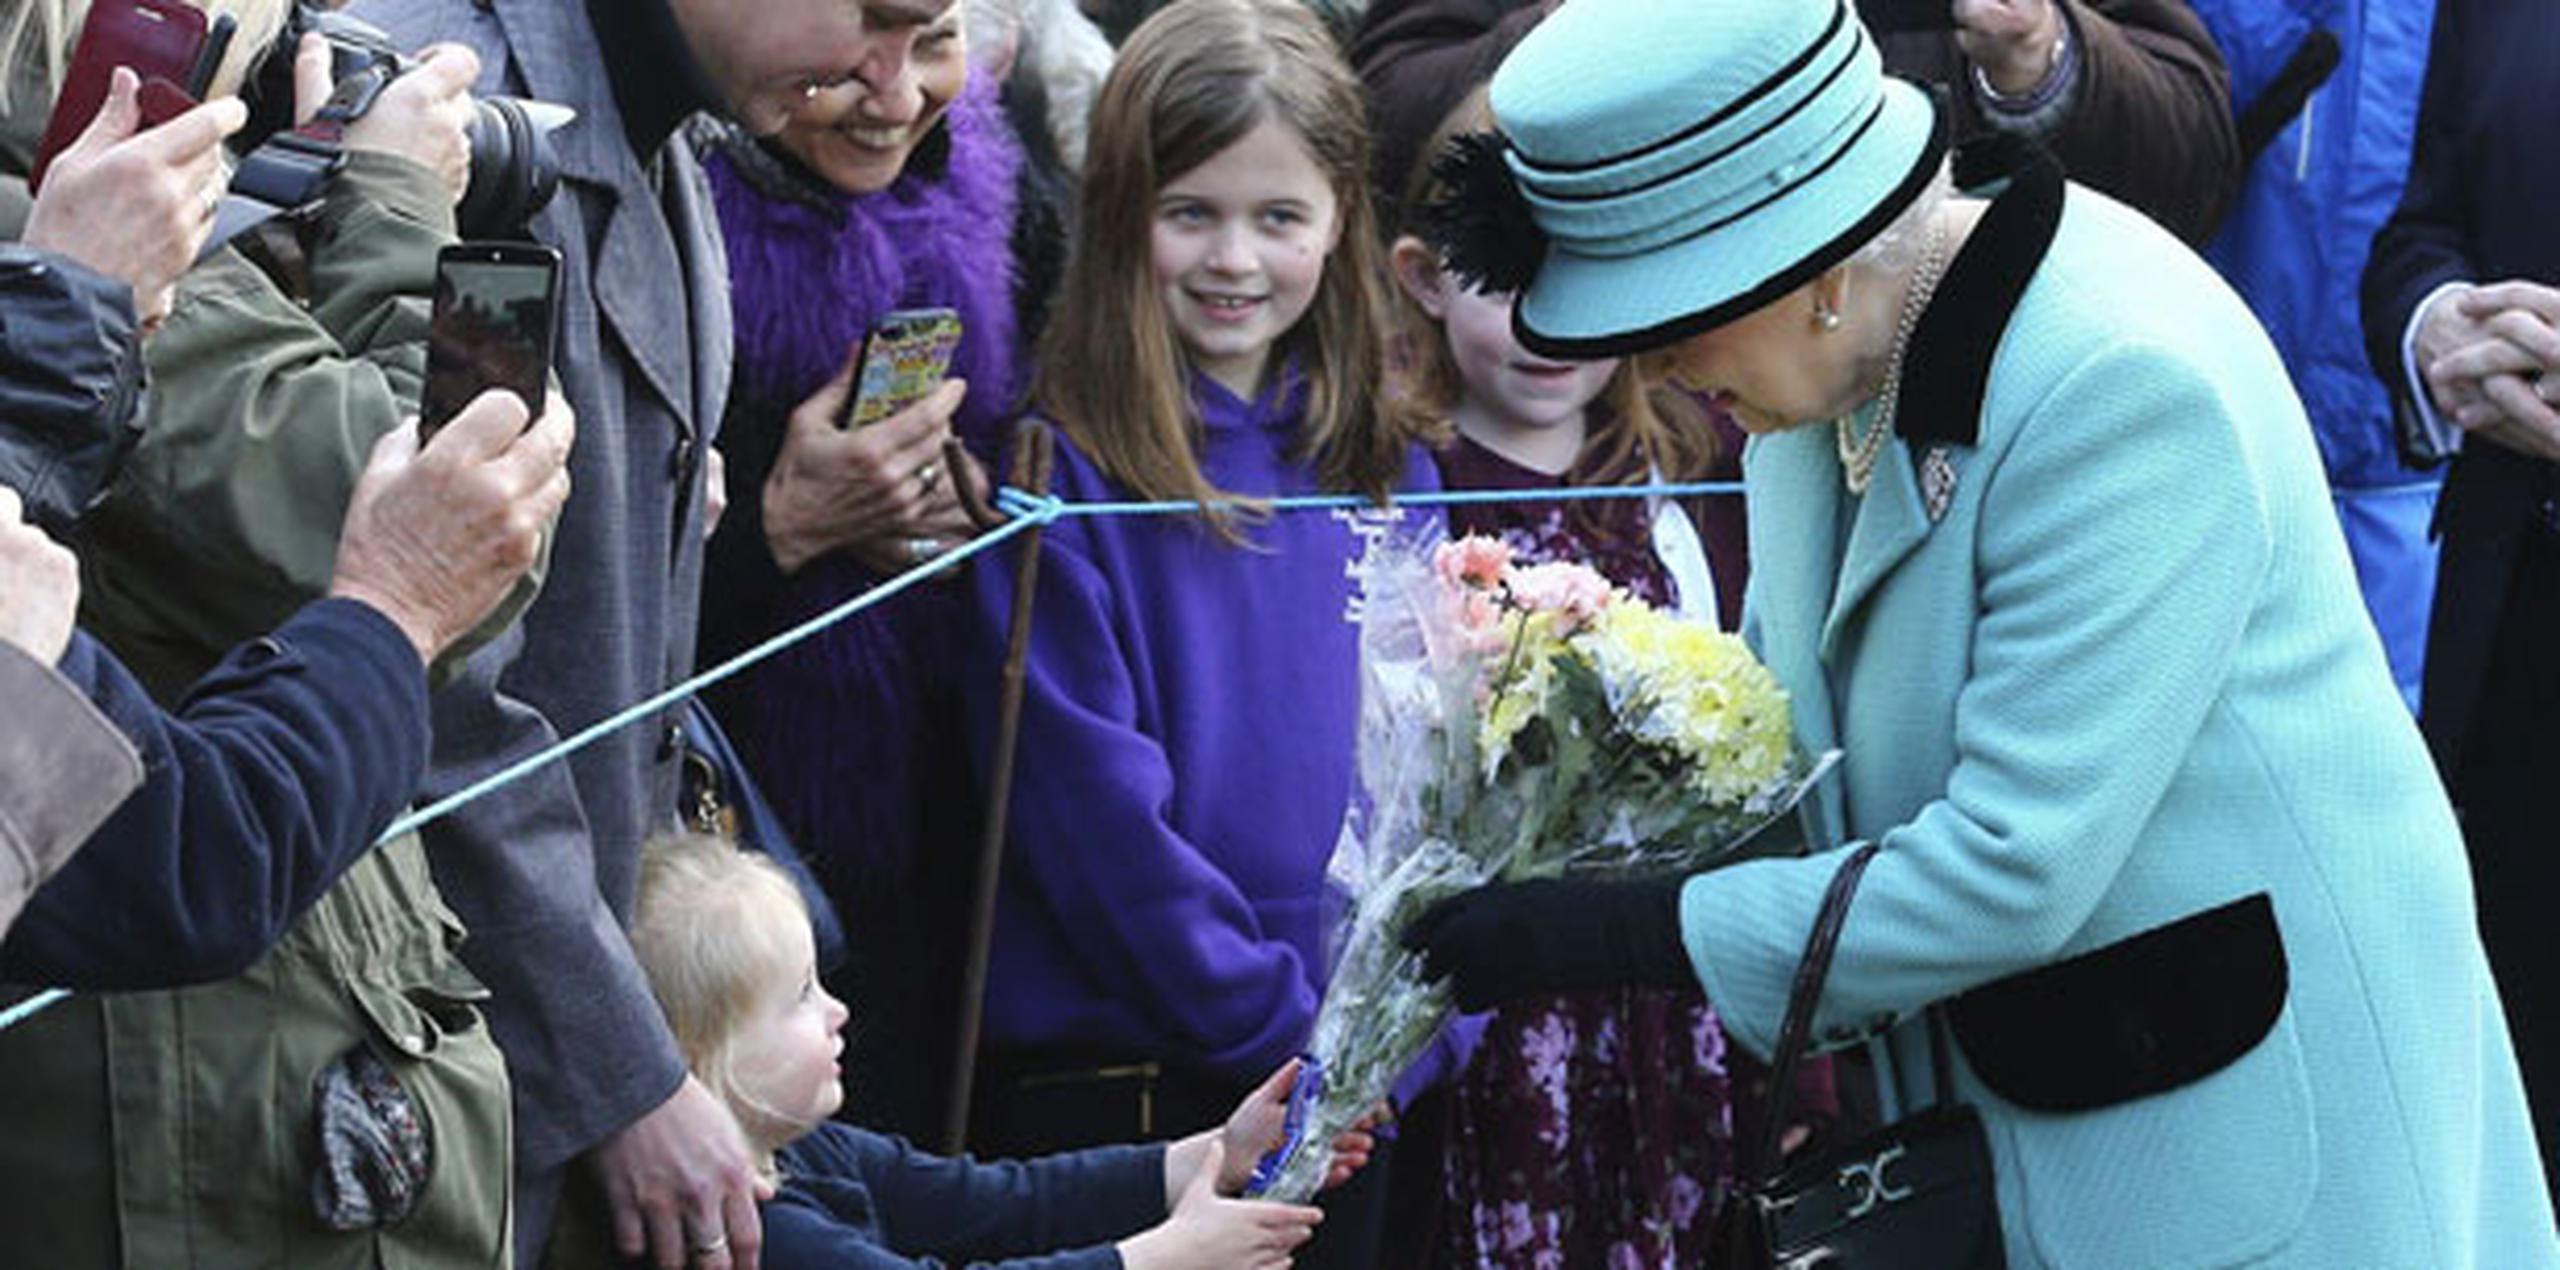 Nacida el 21 de abril de 1926, la reina celebró en 2016 su 90 cumpleaños con varios actos públicos y también un banquete para su familia y amigos en el castillo de Windsor, su residencia preferida a las afueras de Londres. (Gareth Fuller/PA Wire)